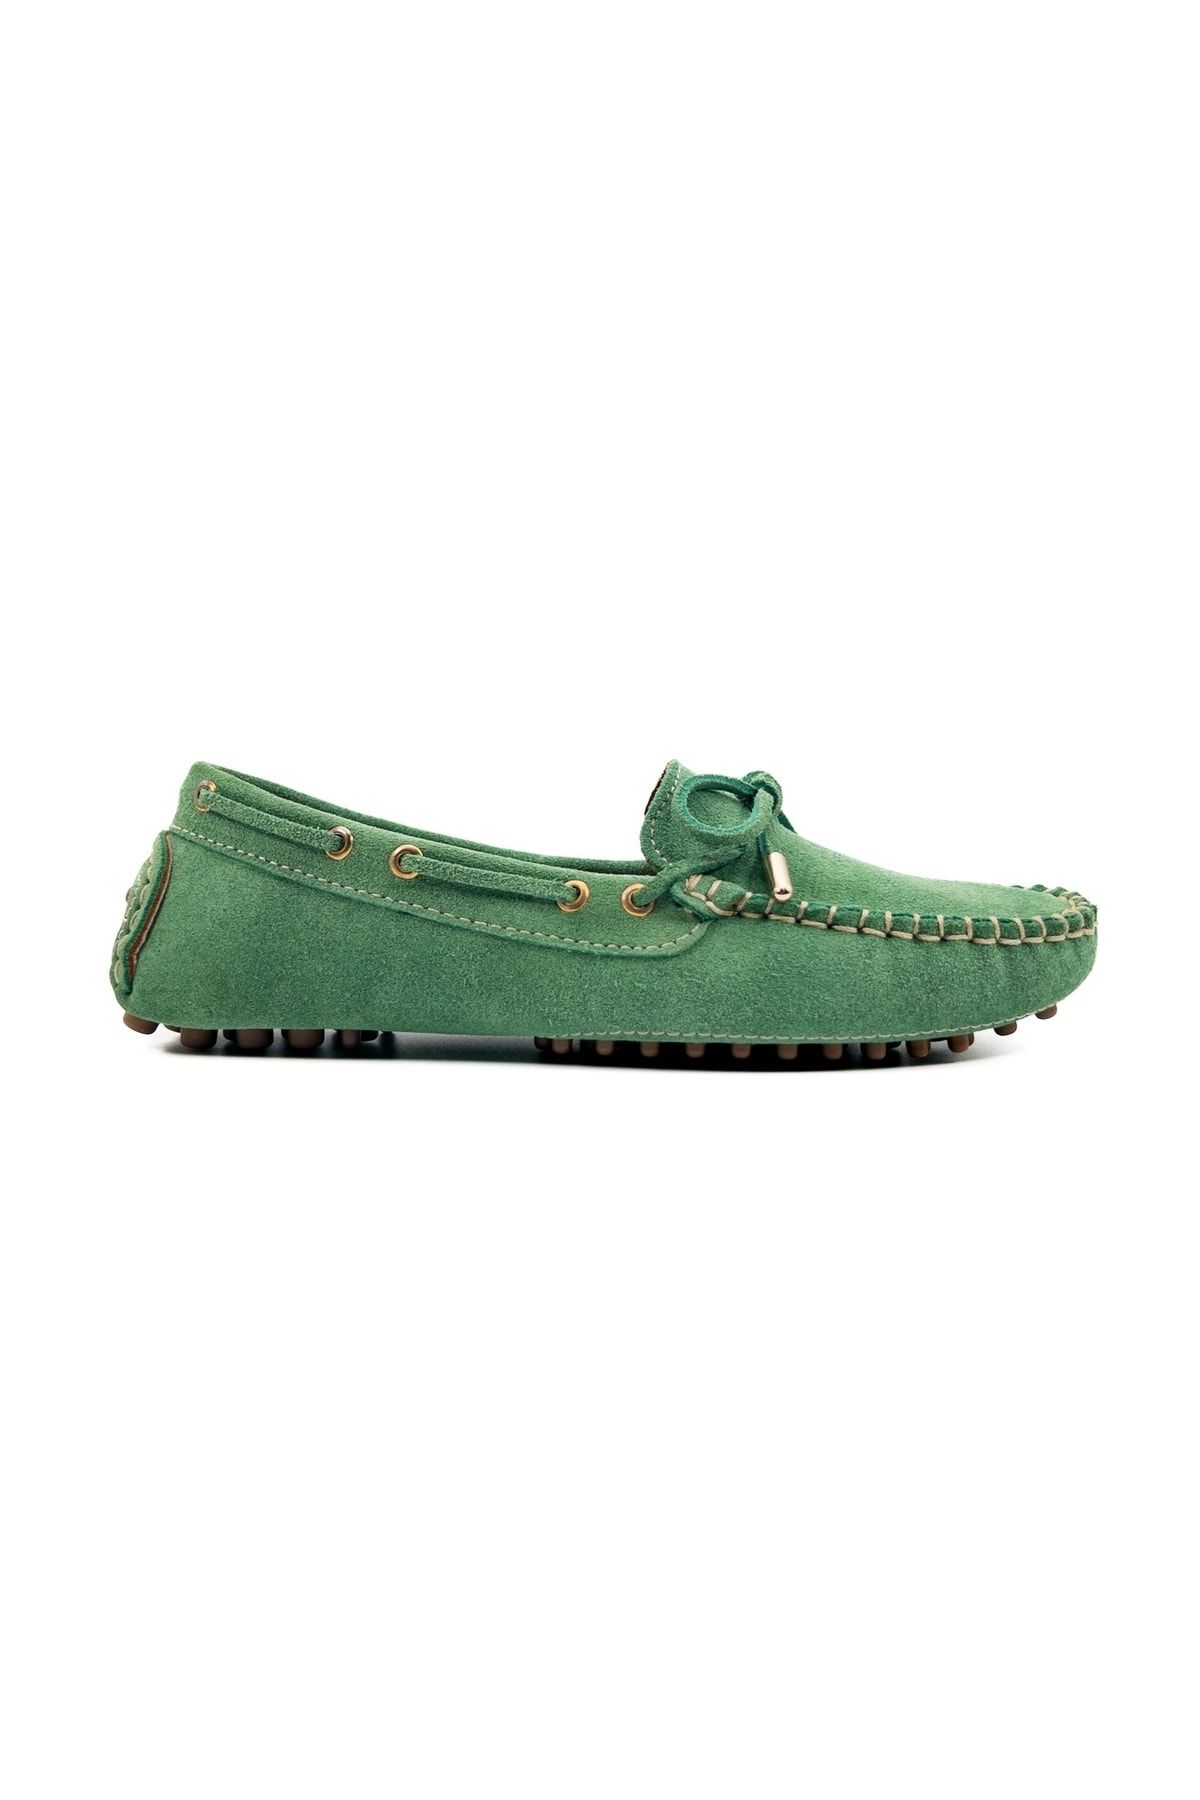 tezcan Patara Açık Yeşil Süet Desenli Hakiki Deri Krampon Taban Loafer Kadın Ayakkabı